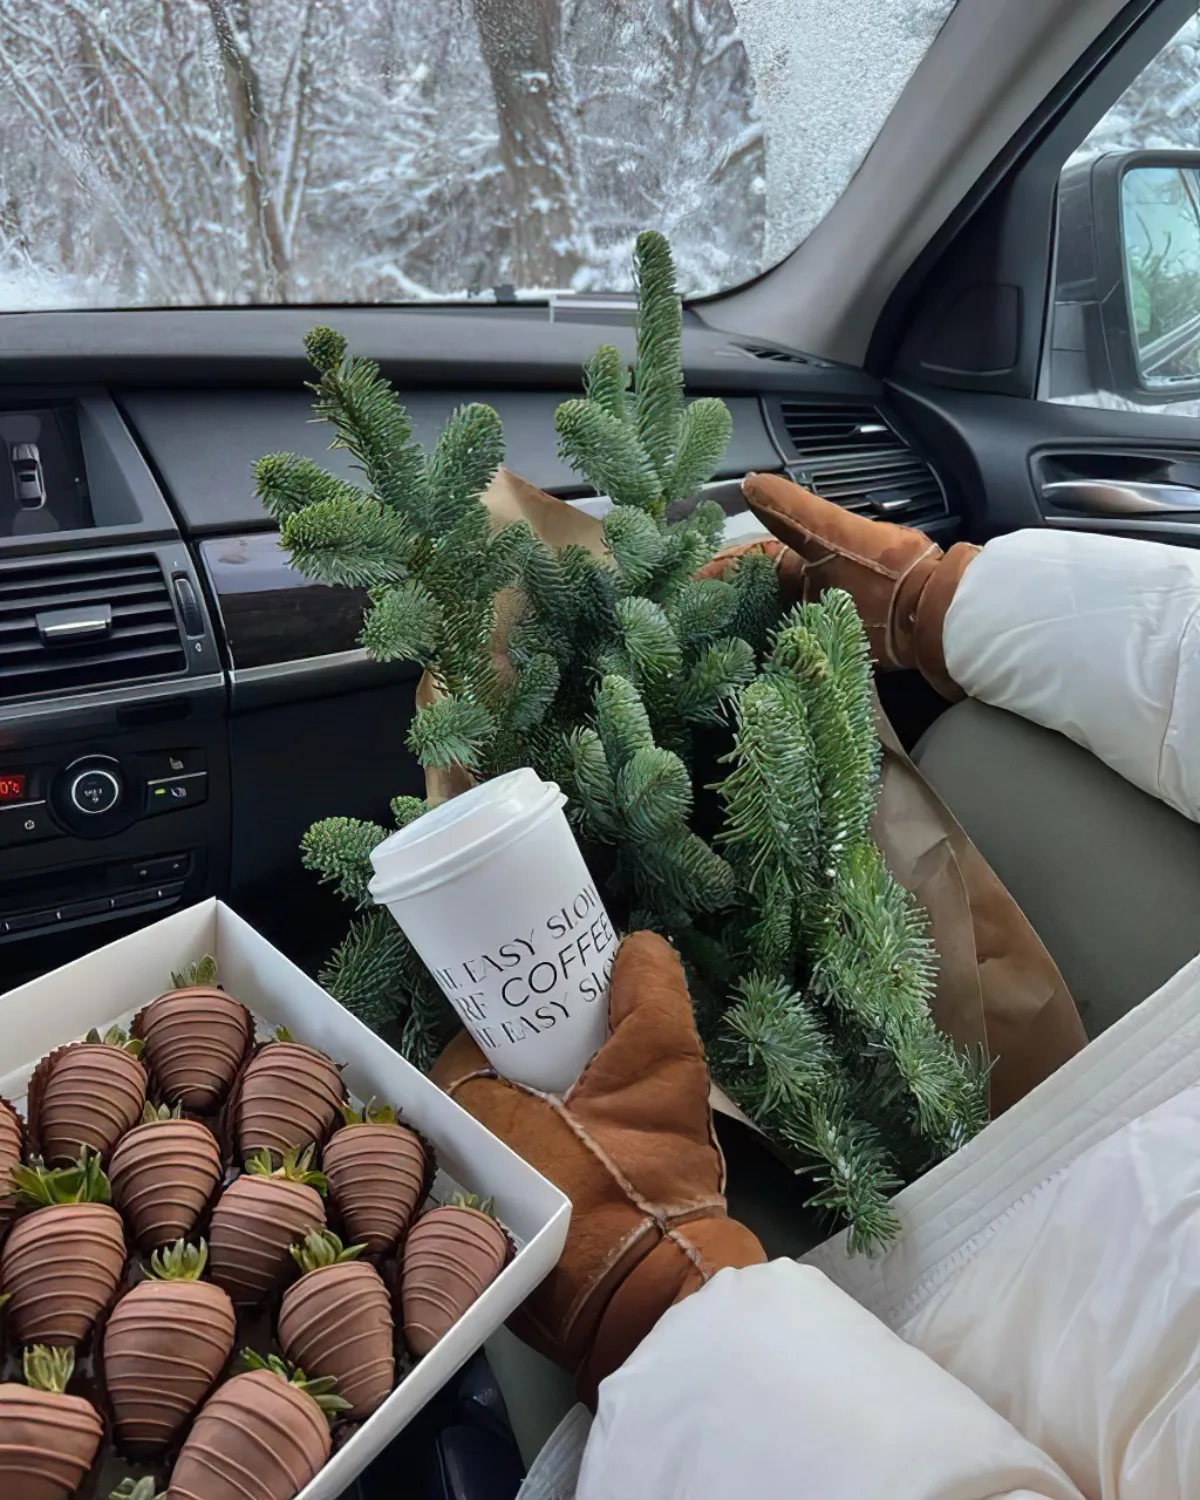 bonbon chocolat cerise boite gants gobelet cafe branches sapin voiture interieur